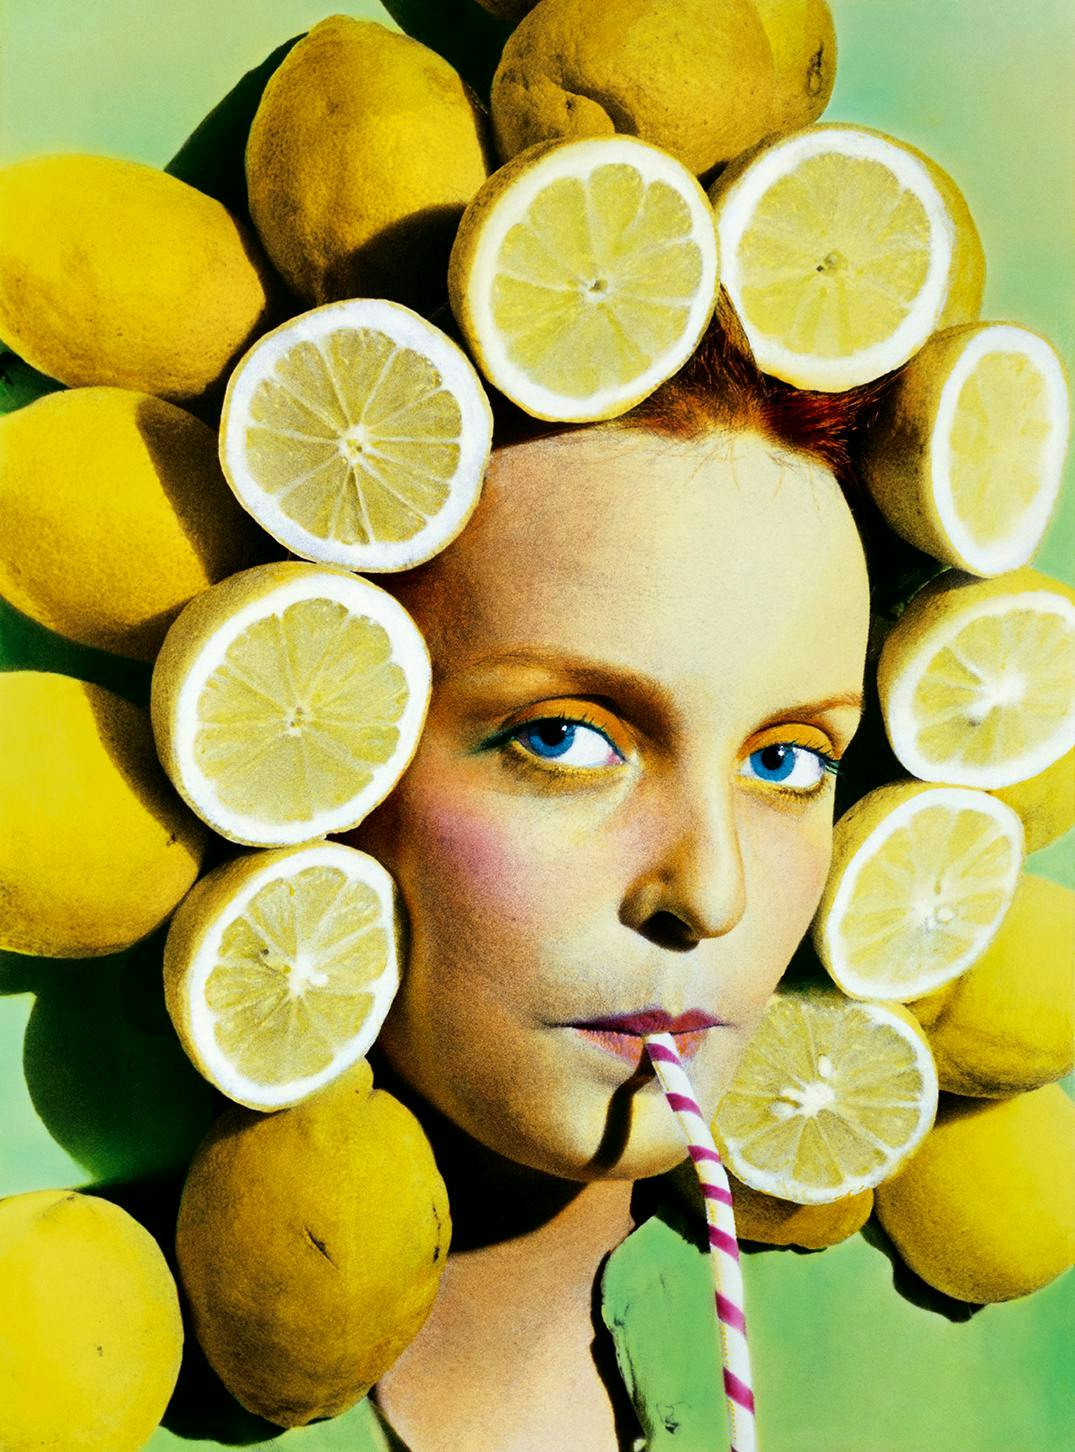 citrus fruit plant fruit food lemon person human